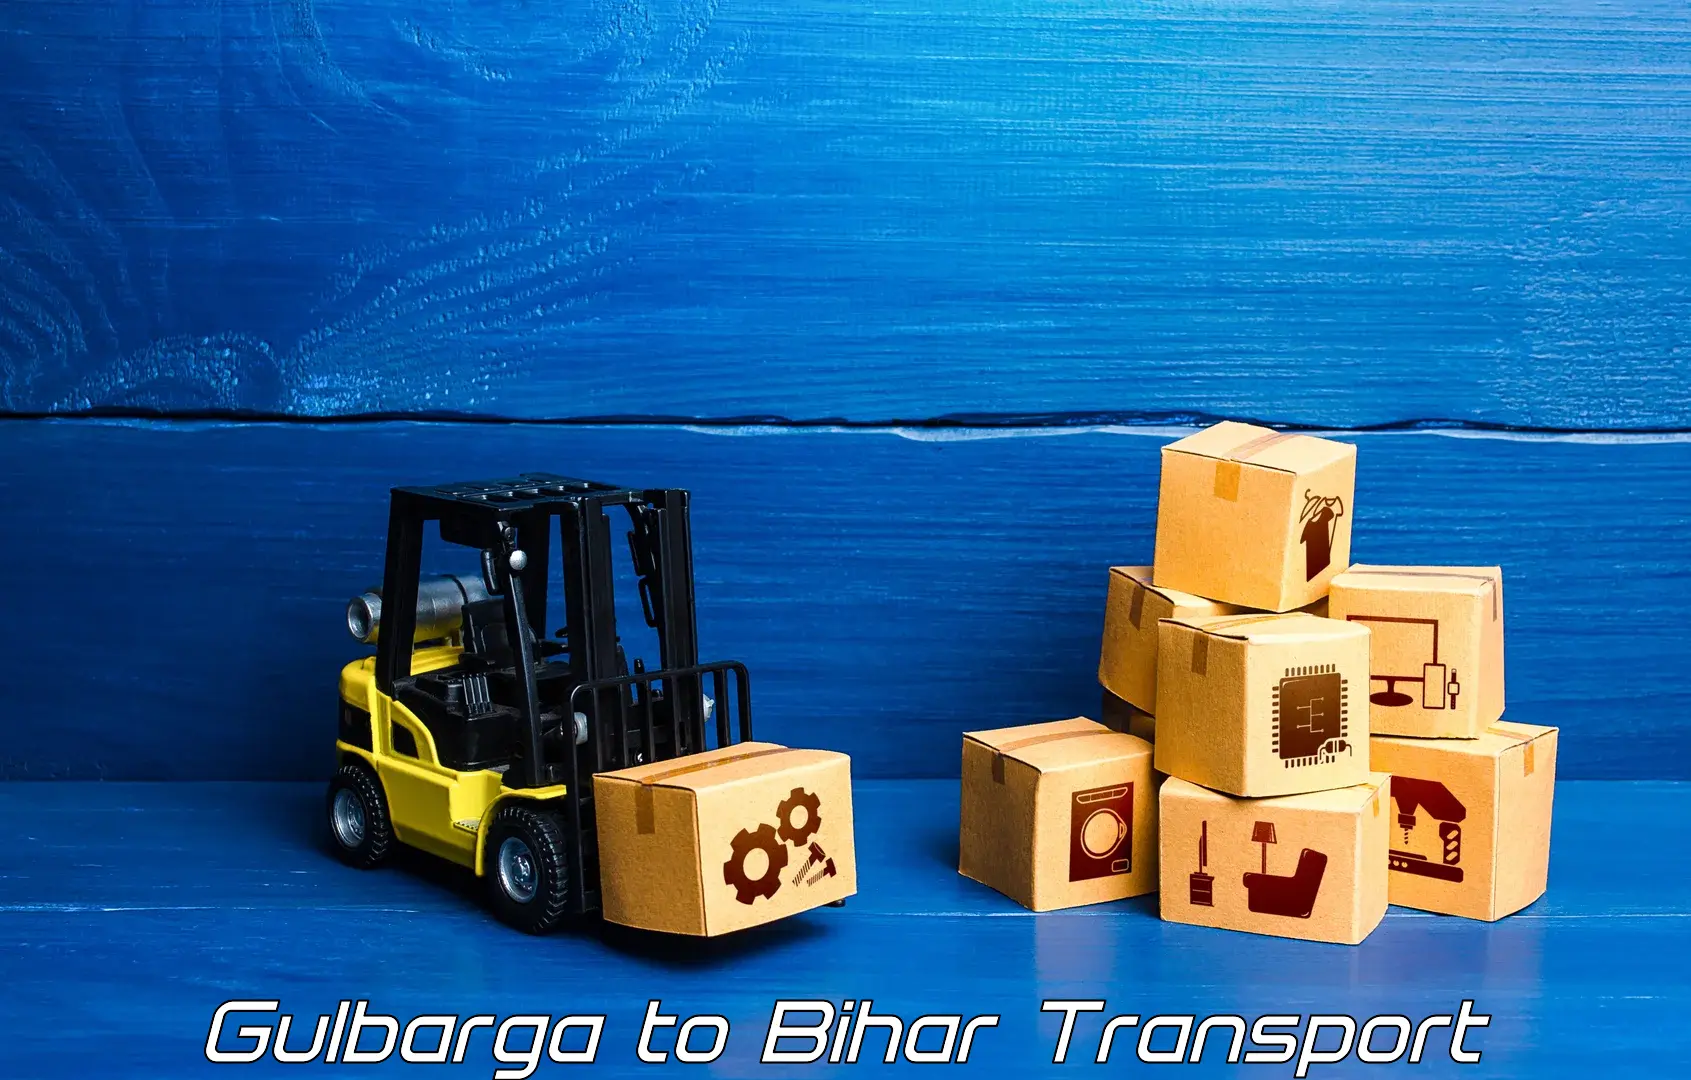 Daily transport service Gulbarga to Mirganj